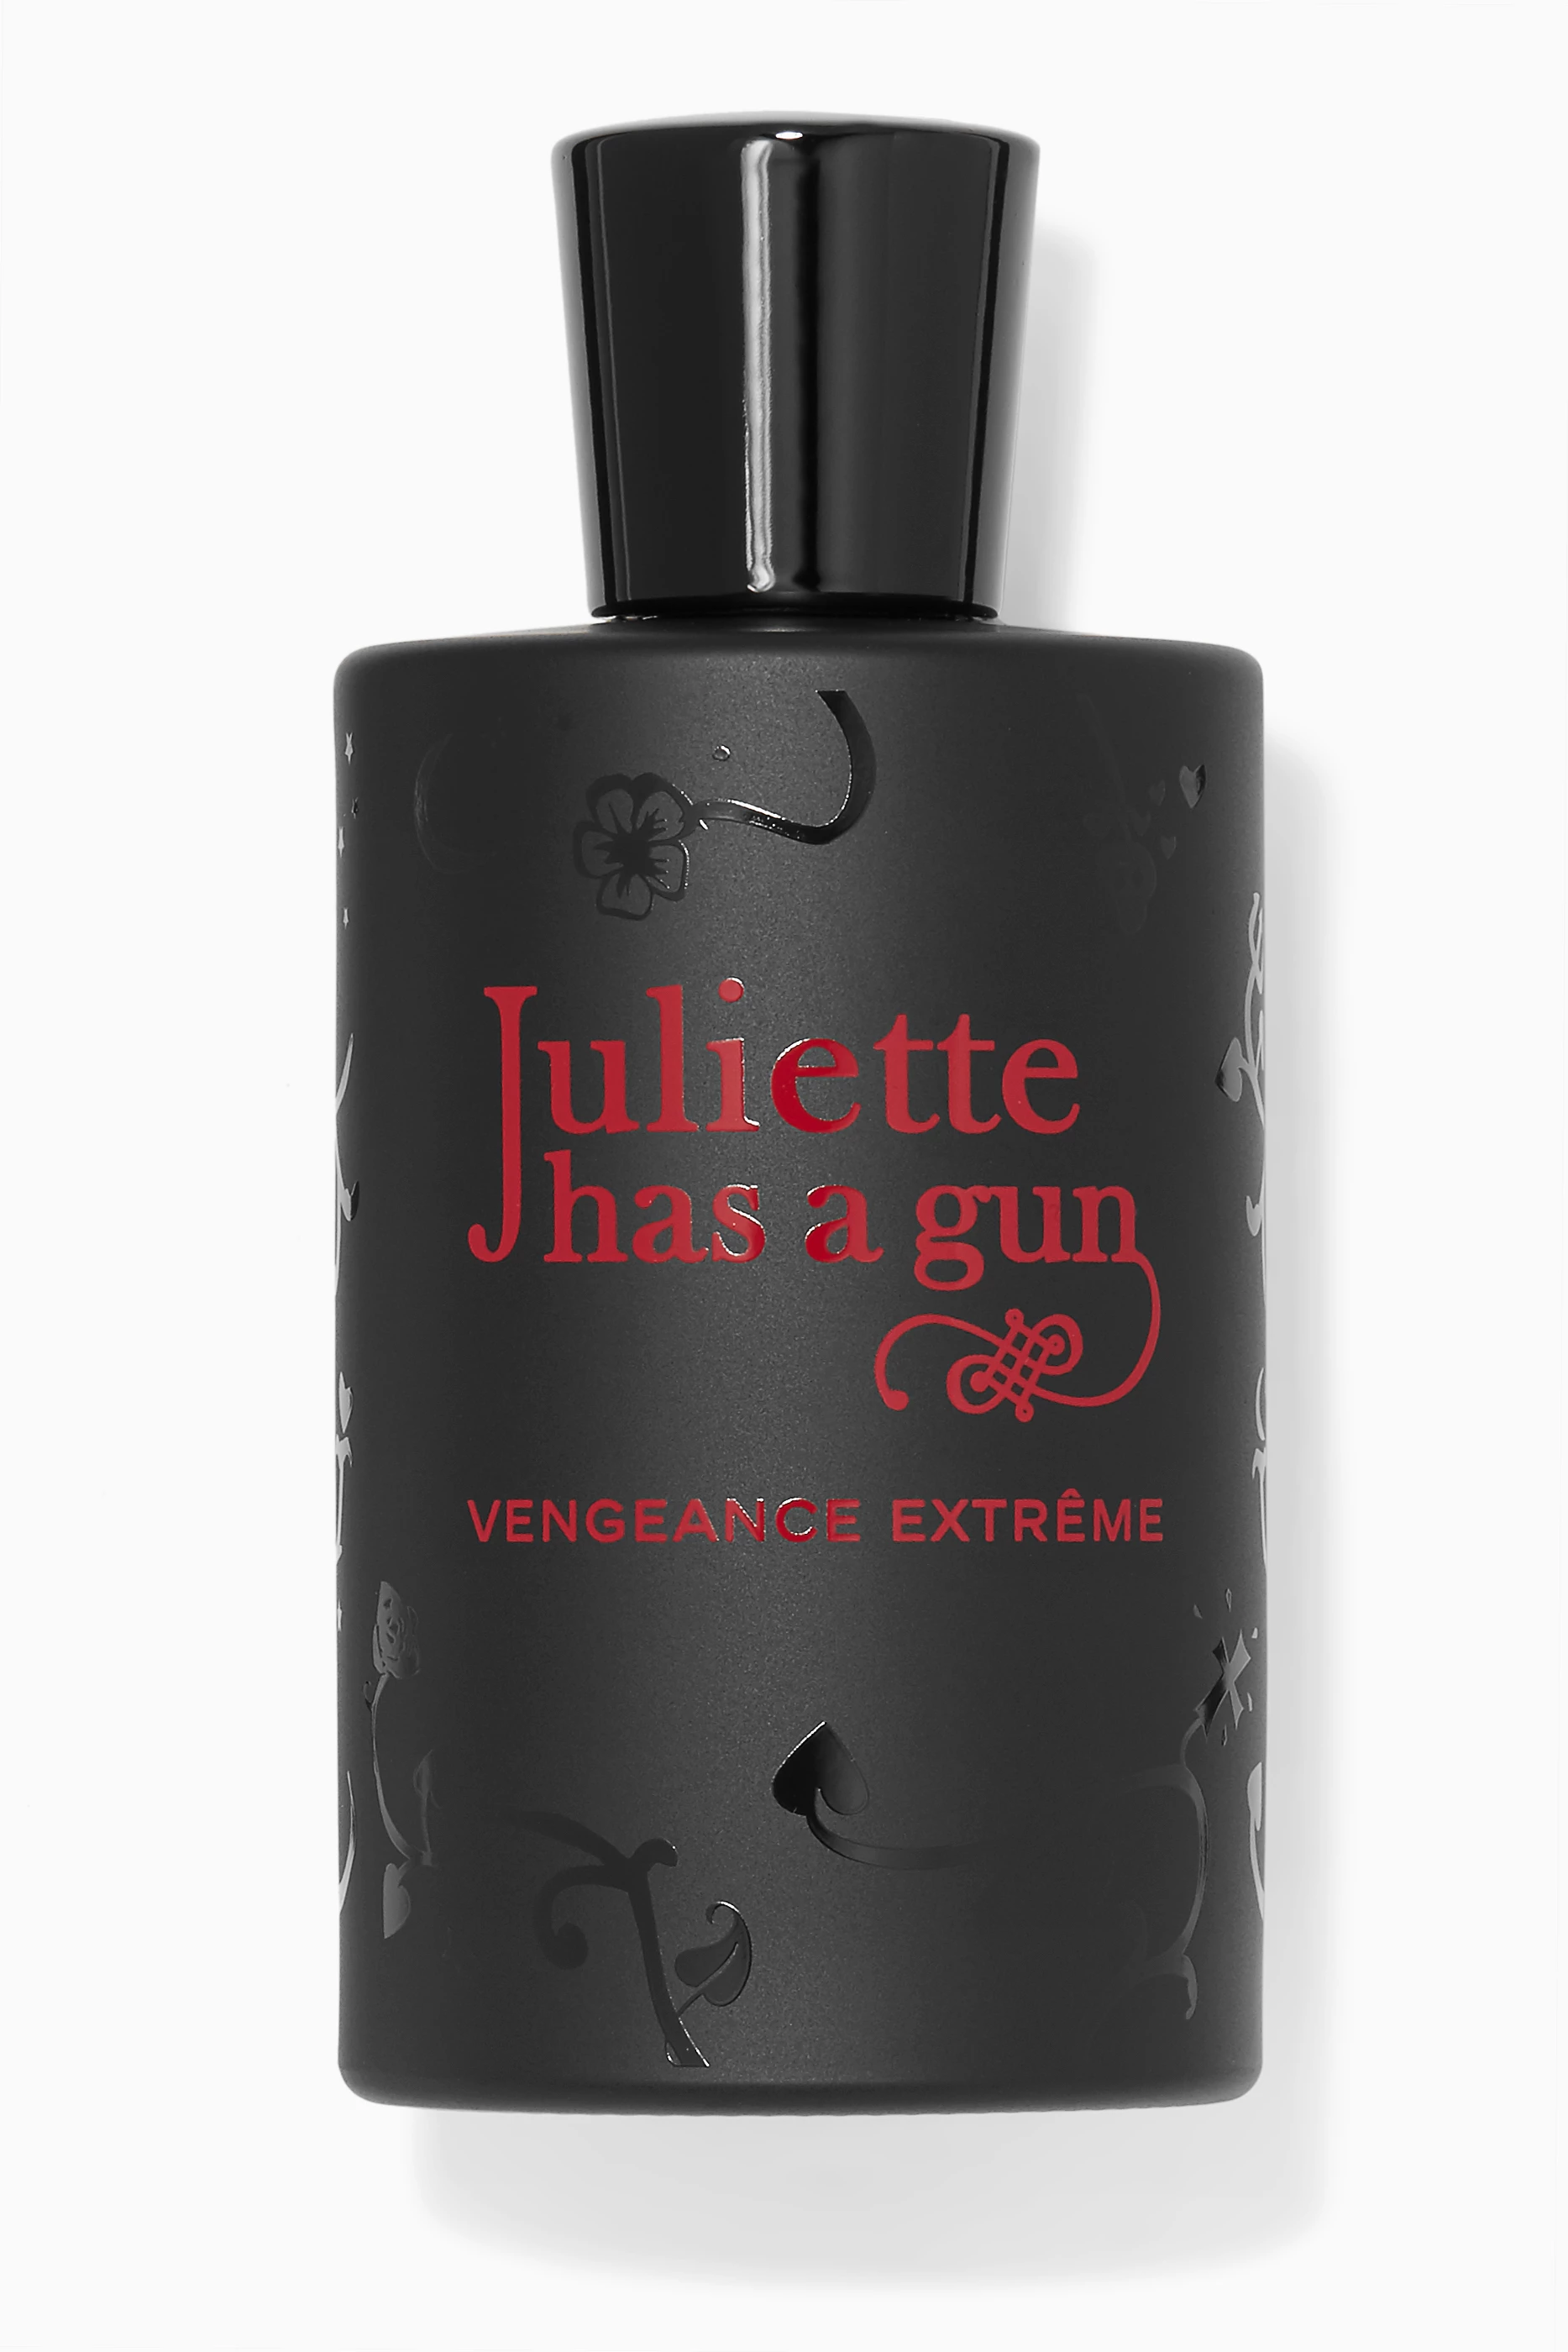 JULIETTE HAS A GUN LADY VENGEANCE EXTREME FOR WOMEN - EAU DE PARFUM SPRAY,  3.4 OZ